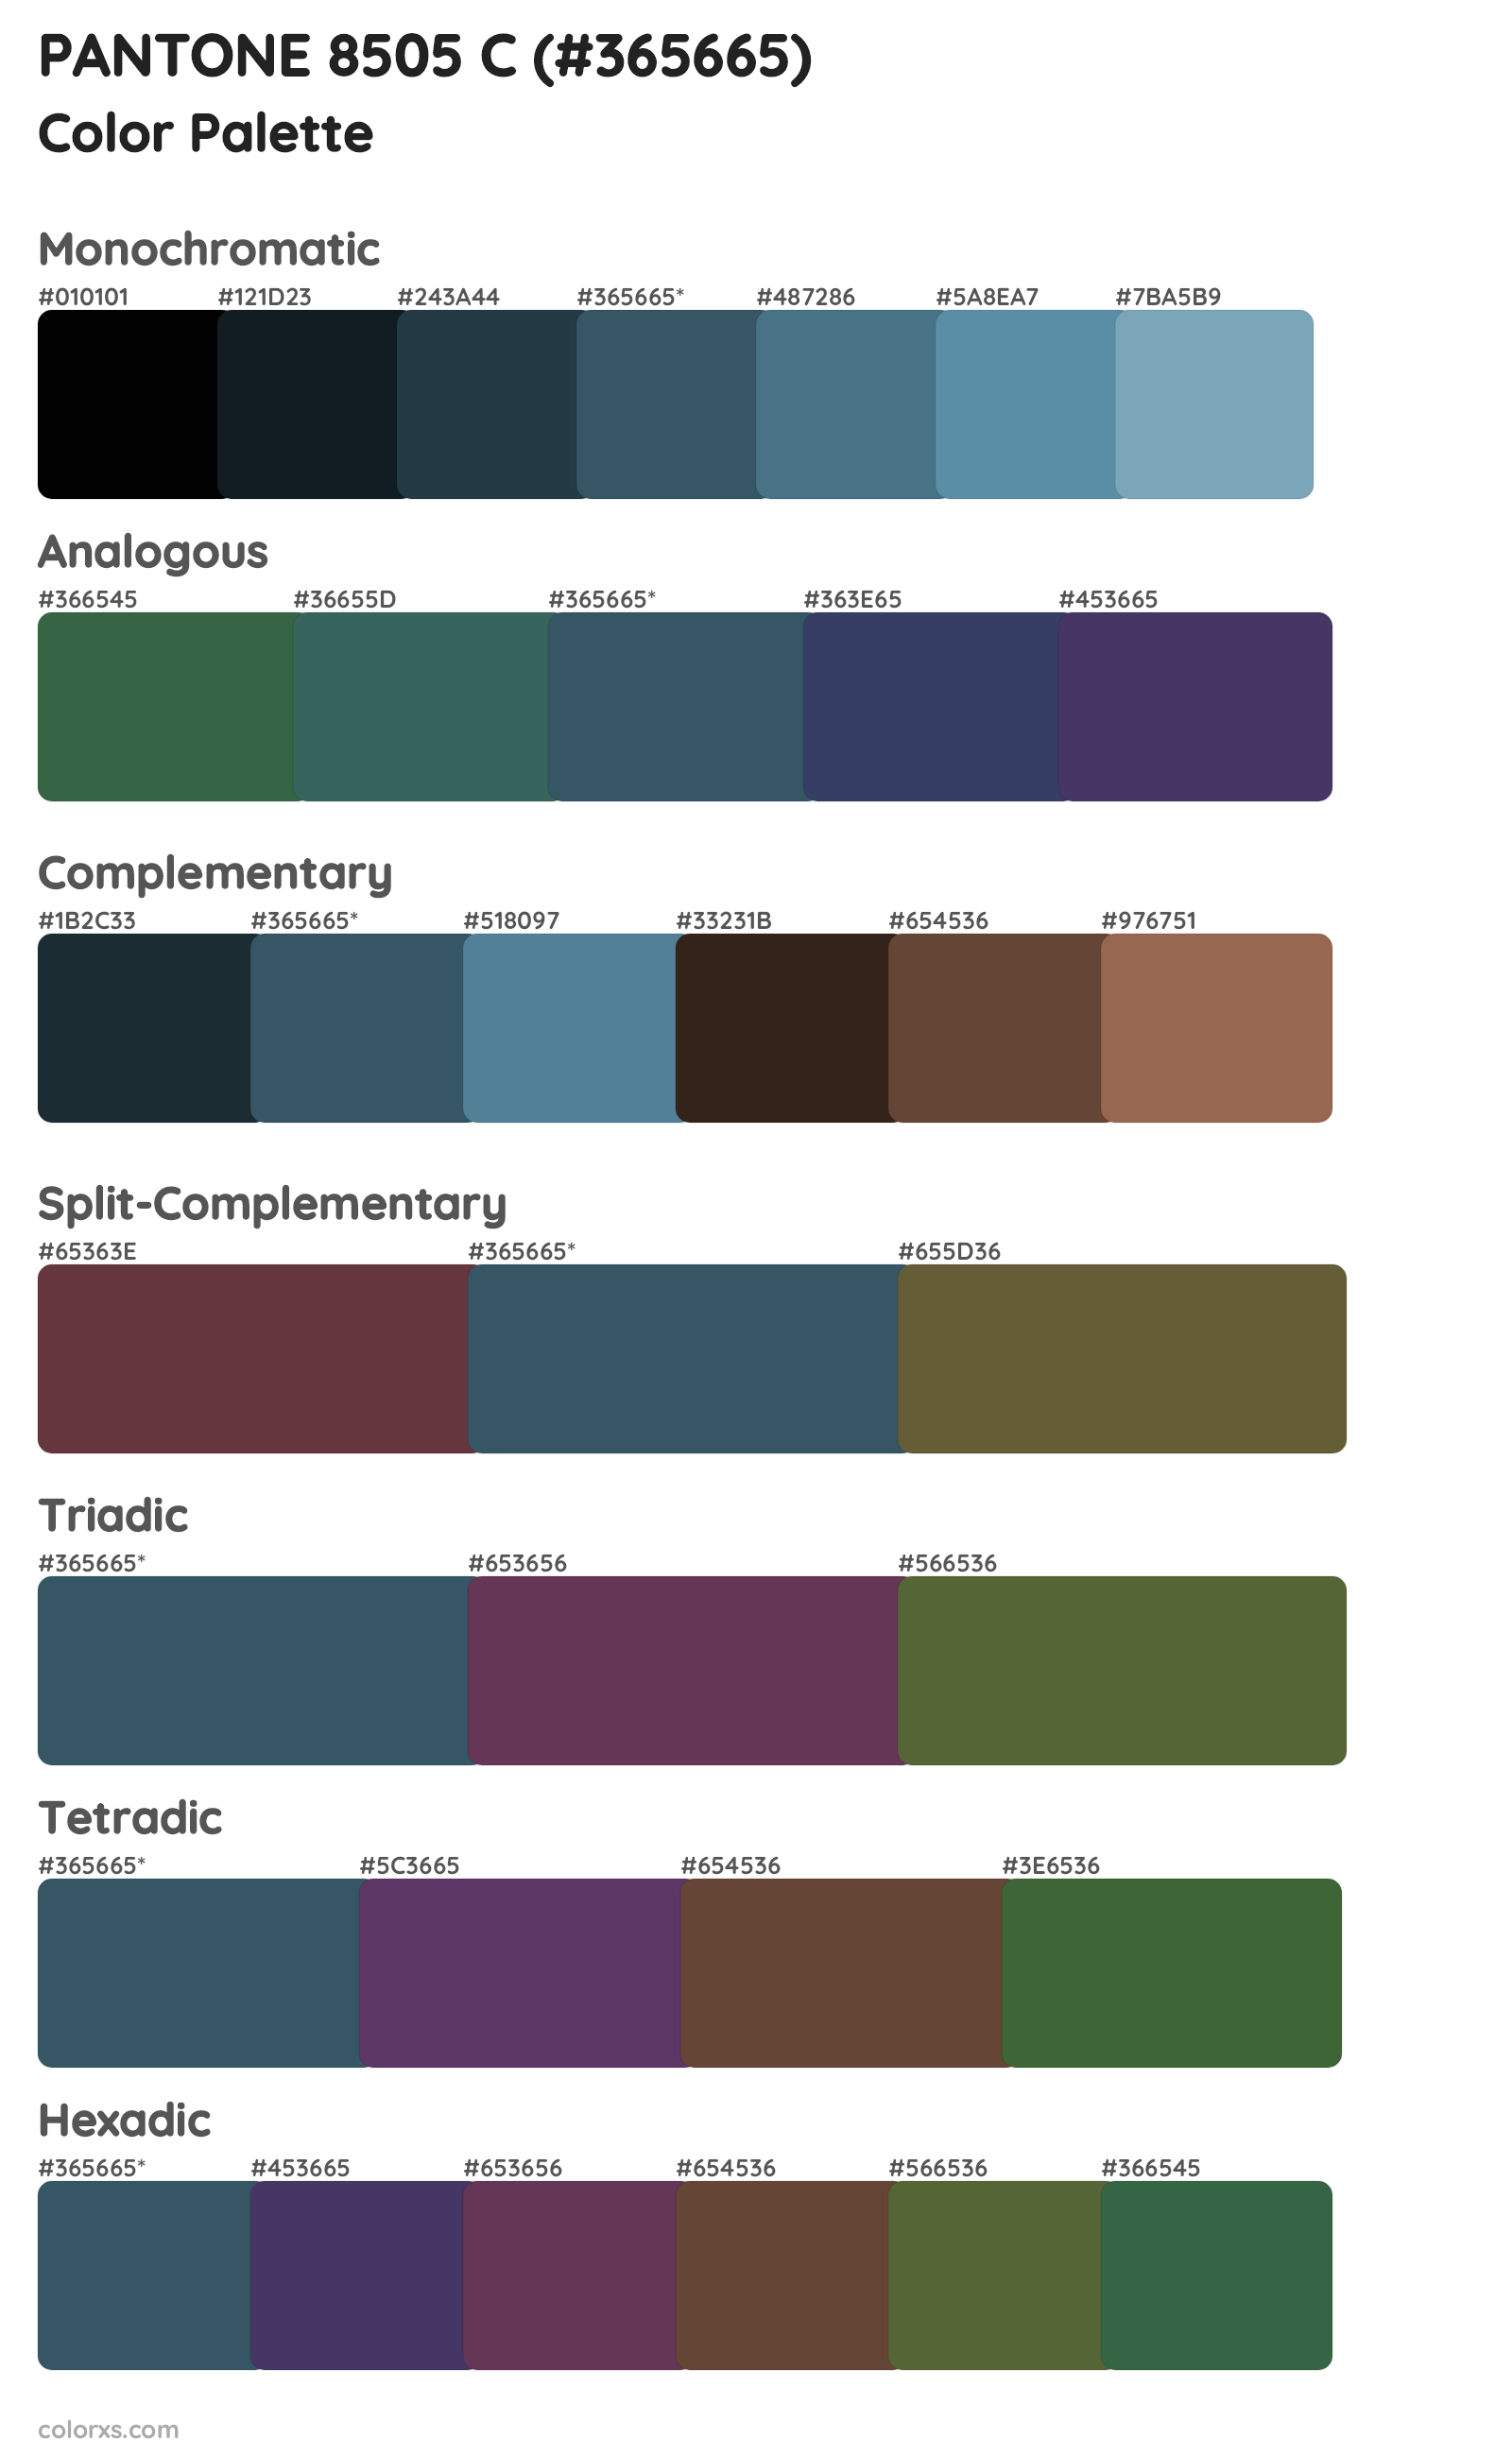 PANTONE 8505 C Color Scheme Palettes